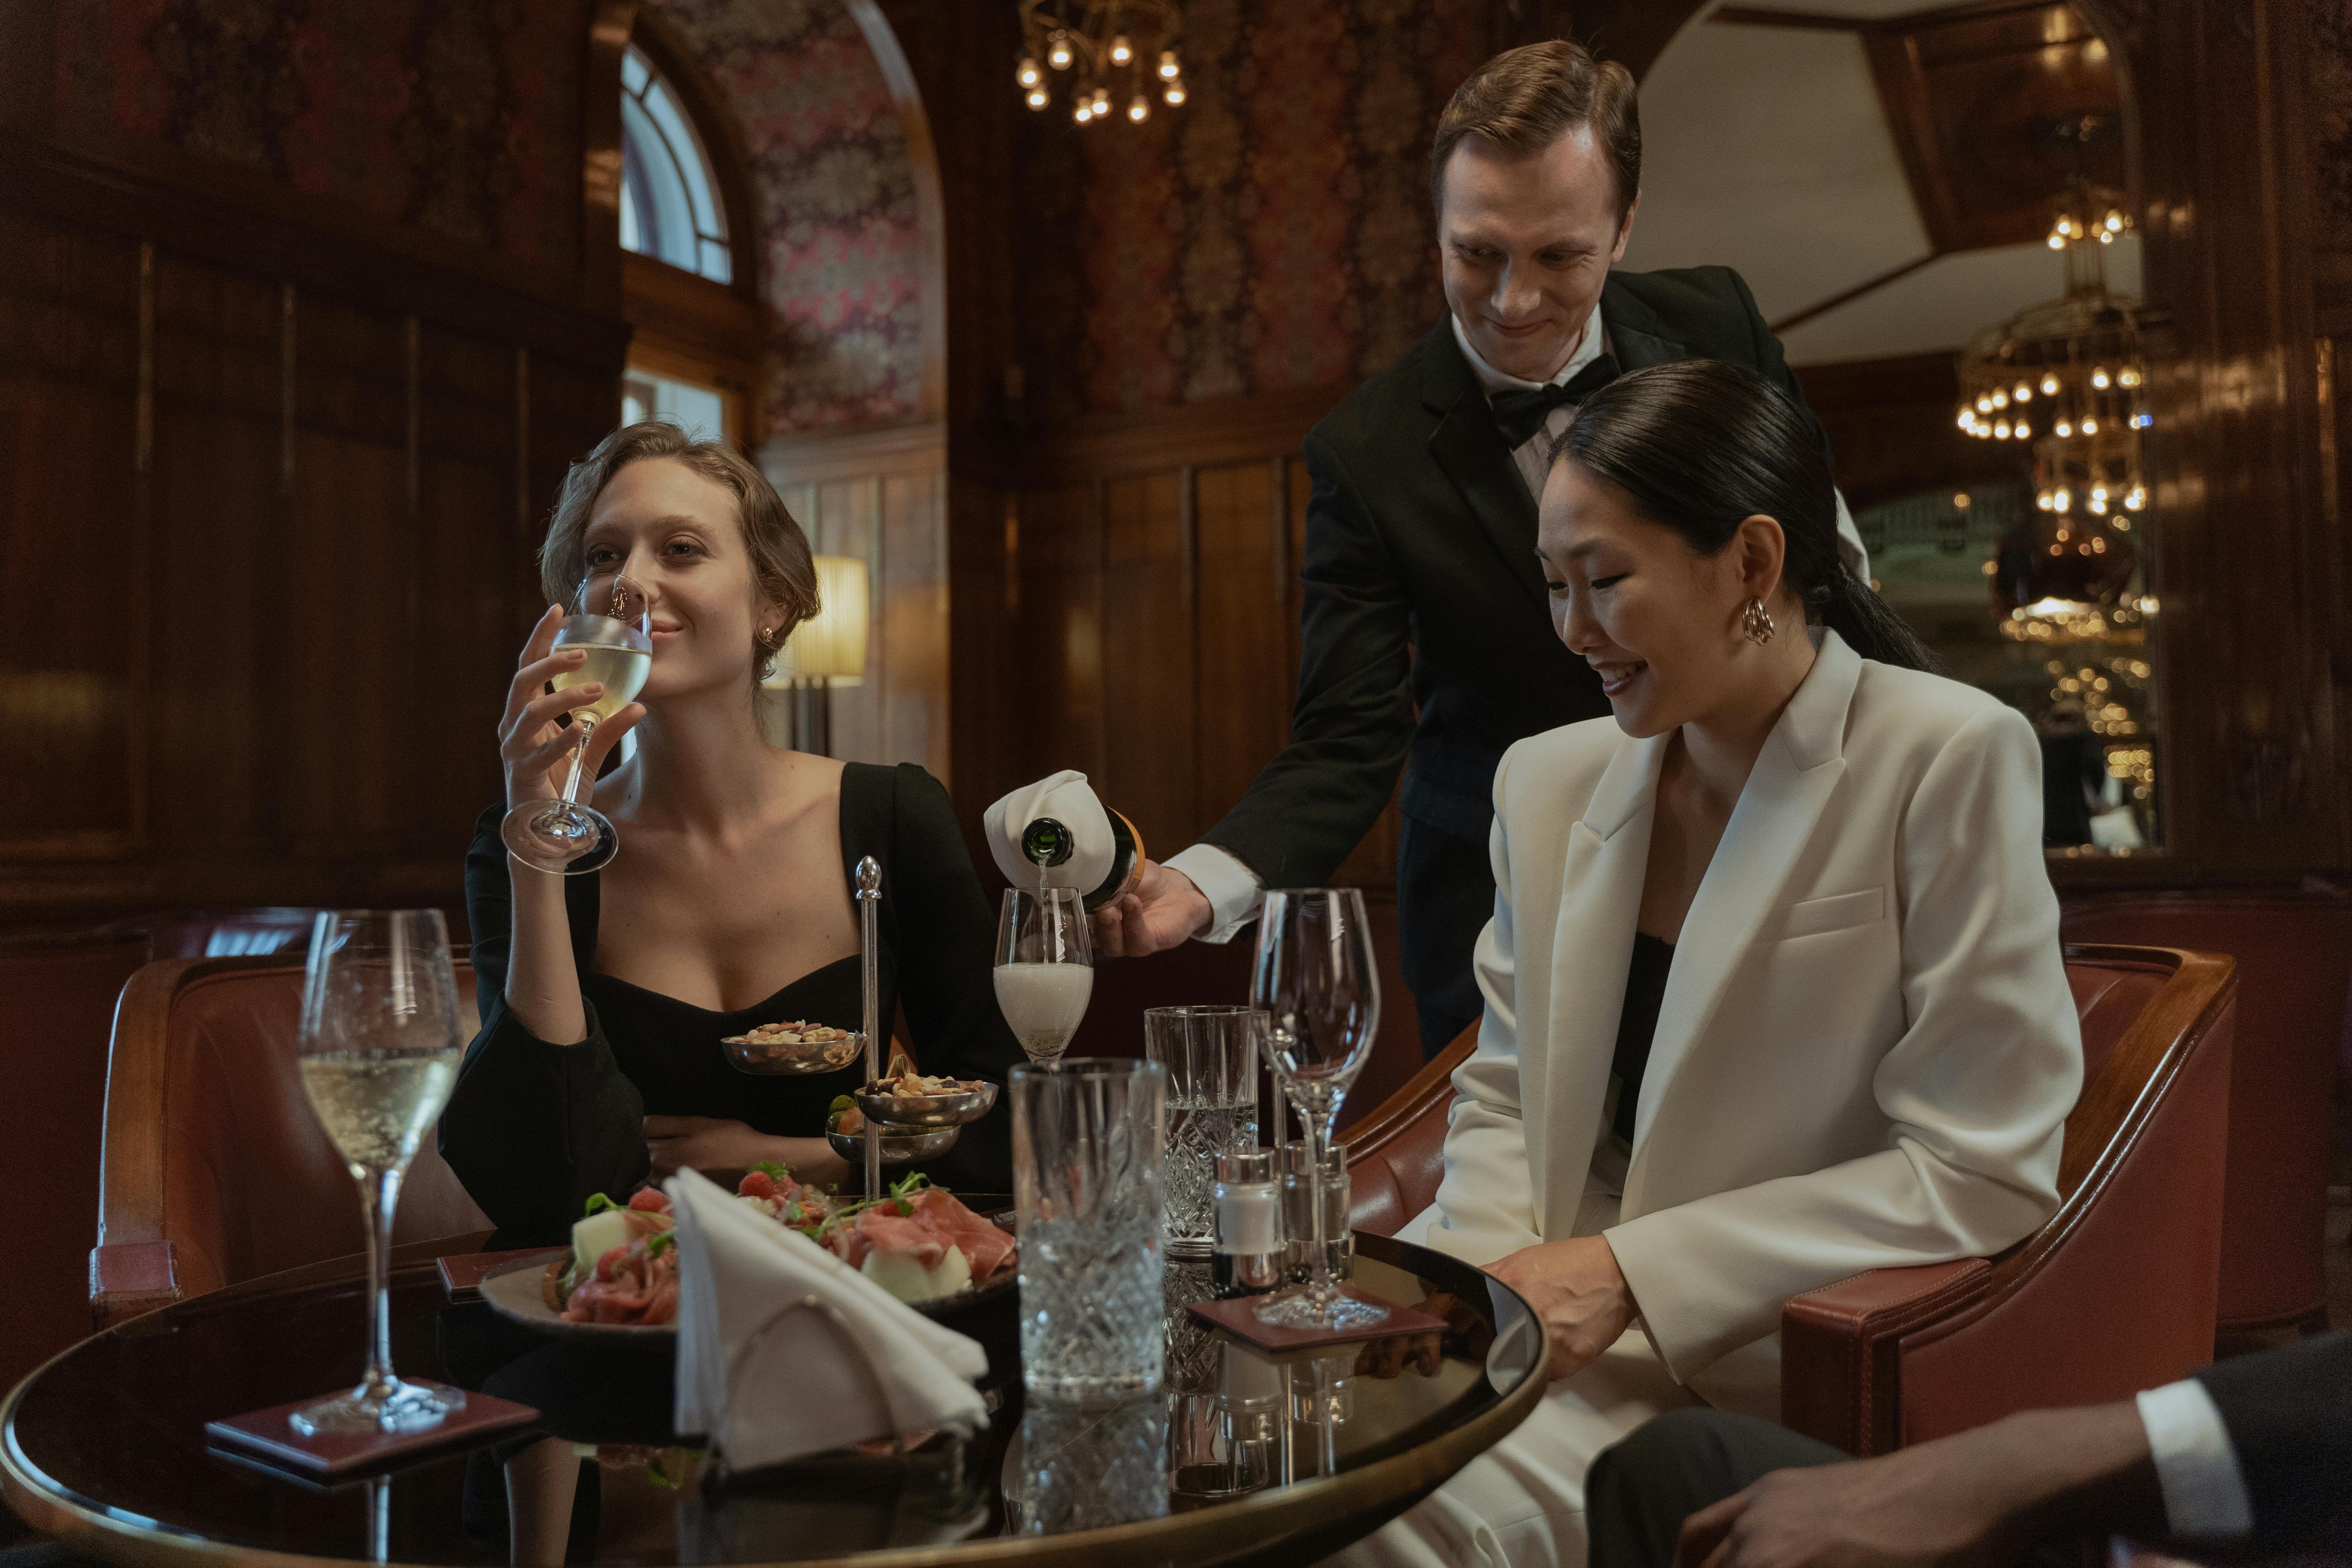 Mujeres disfrutando de unas copas mientras un camarero les sirve | Foto: Pexels